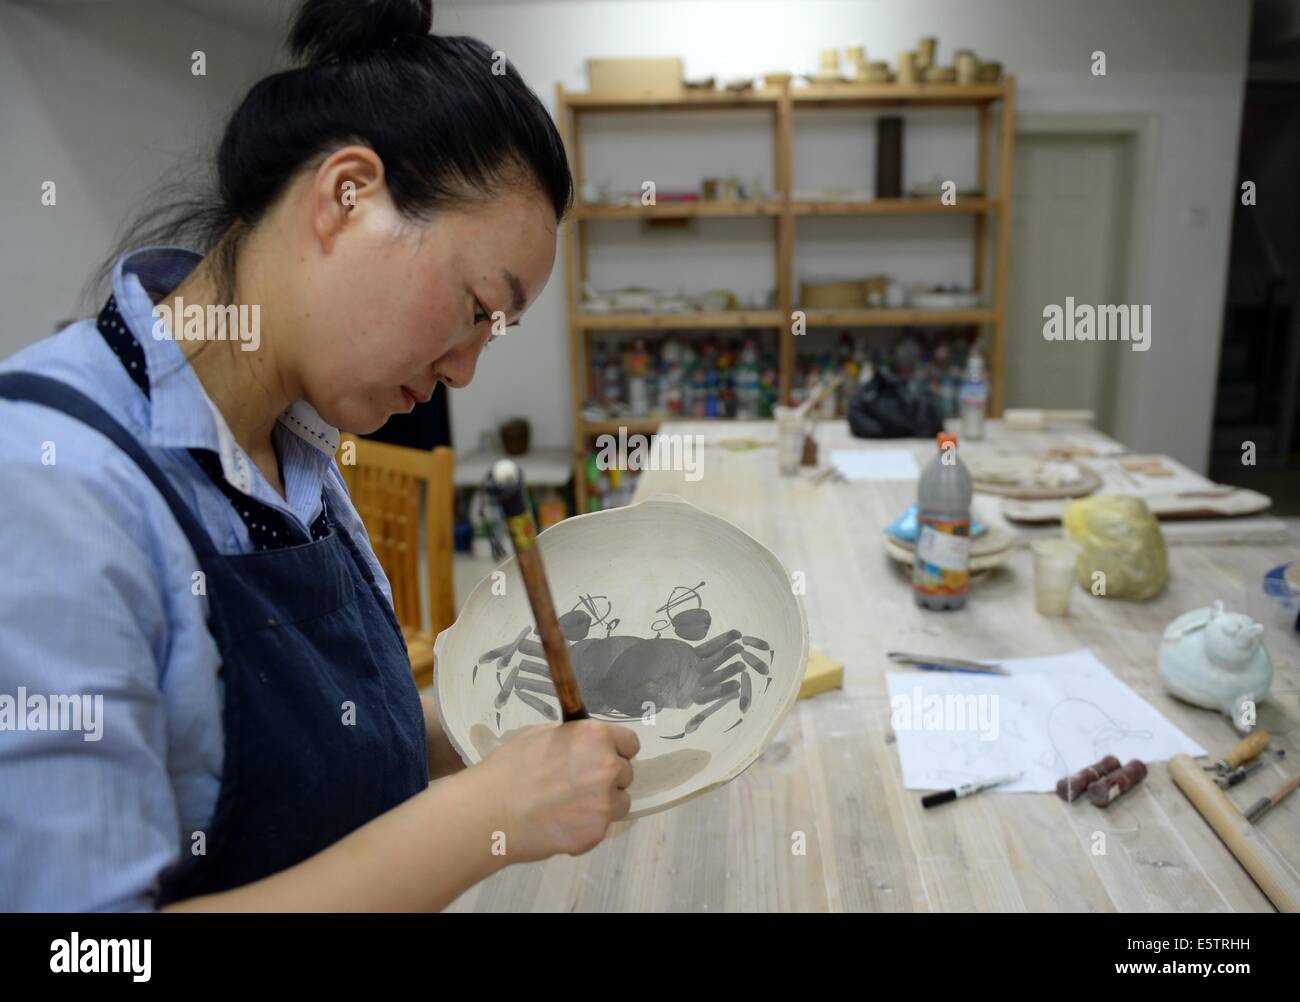 (140806) -- Pechino, il 6 agosto 2014 (Xinhua) -- Zhang Lingyun lavora in uno studio nella sua casa di Jingdezhen, Cina orientale della provincia di Jiangxi, luglio 18, 2014. Zhang Lingyun è 40. È stato 20 anni dell'artista in ceramica è venuto a Jingdezhen, della Cina di porcellana "capitale". Zhang della storia con la ceramica ha avuto un casuale, romantico inizio: Lei sapeva a malapena a nulla sulla ceramica prima ha incontrato il nome 'Ceramica Jingdezhen Institute (JCI)' quando si applica per il college. "Ceramiche sembrava interessante così ho depositato la domanda di JCI.' Il Capriccio di impulso ha fatto una grande differenza in Zhang la vita. Egli Foto Stock